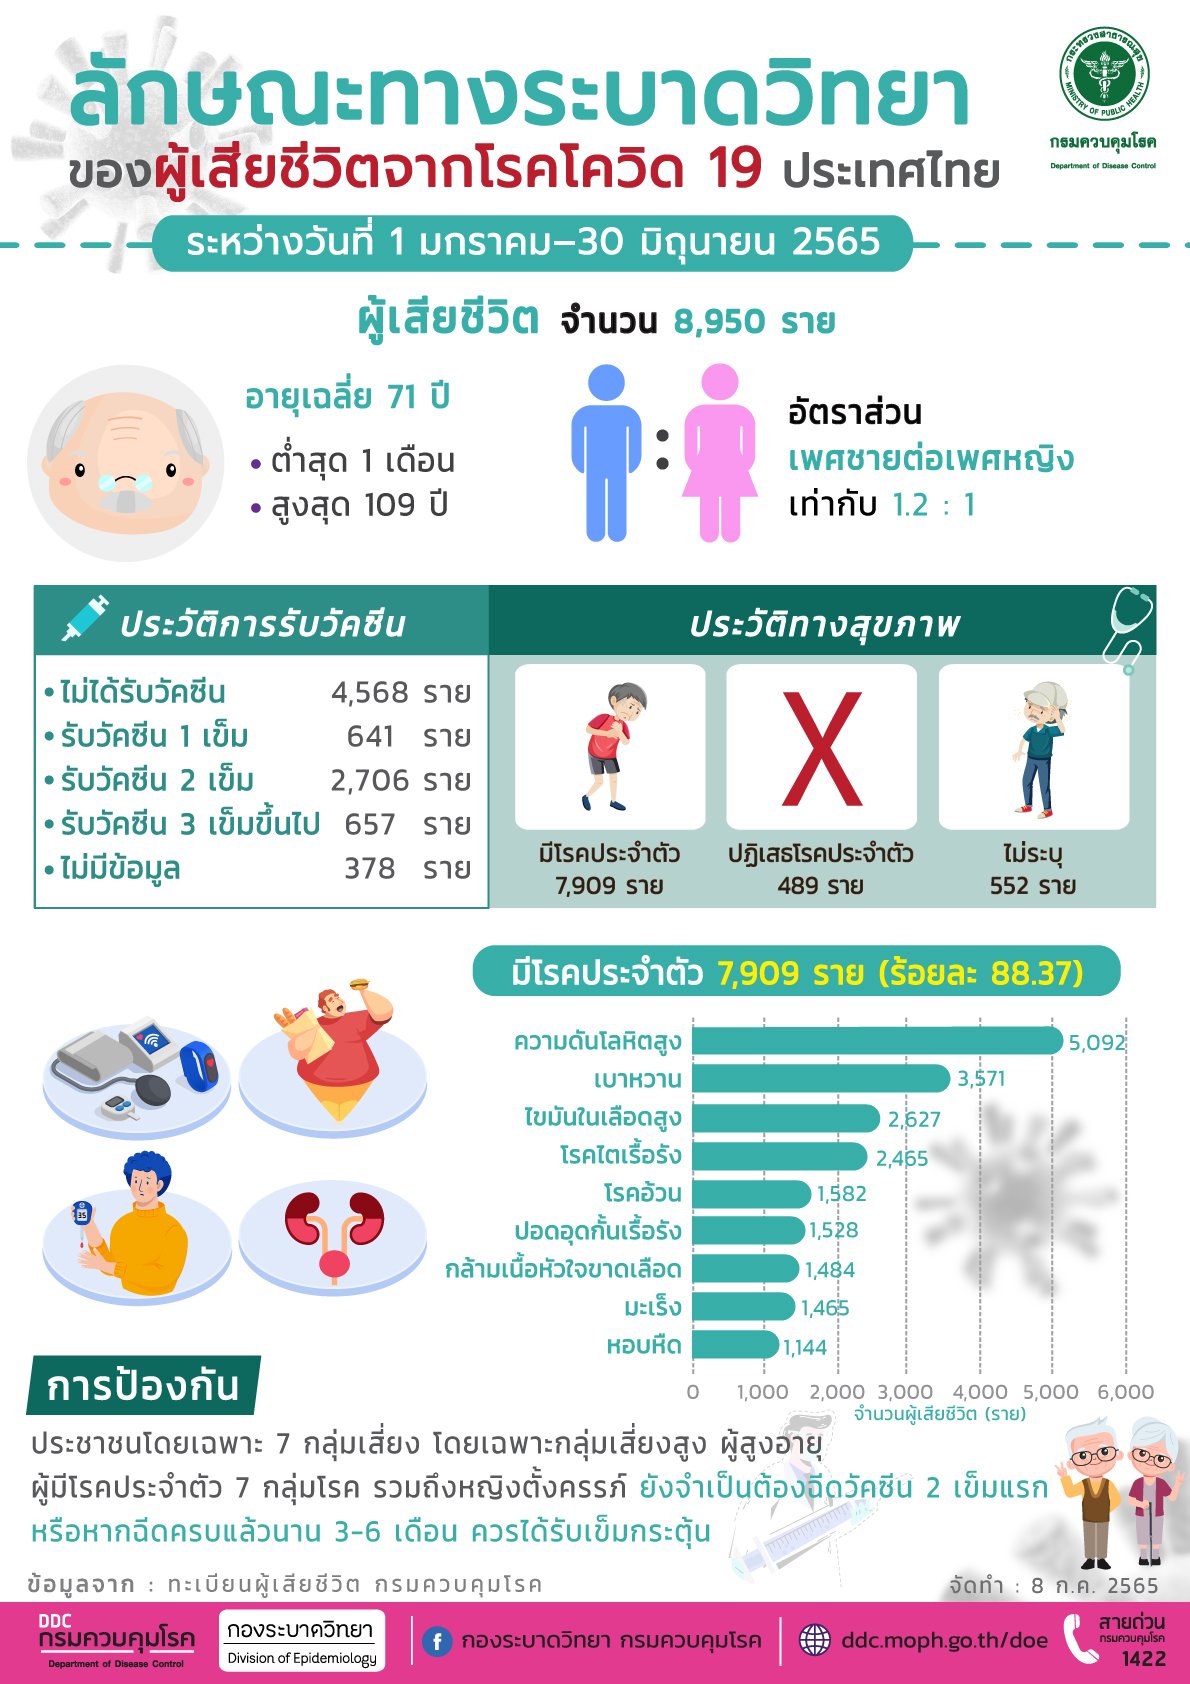 ลักษณะทางระบาดวิทยาของผู้เสียชีวิตจากโรคโควิด-19 ในประเทศไทย